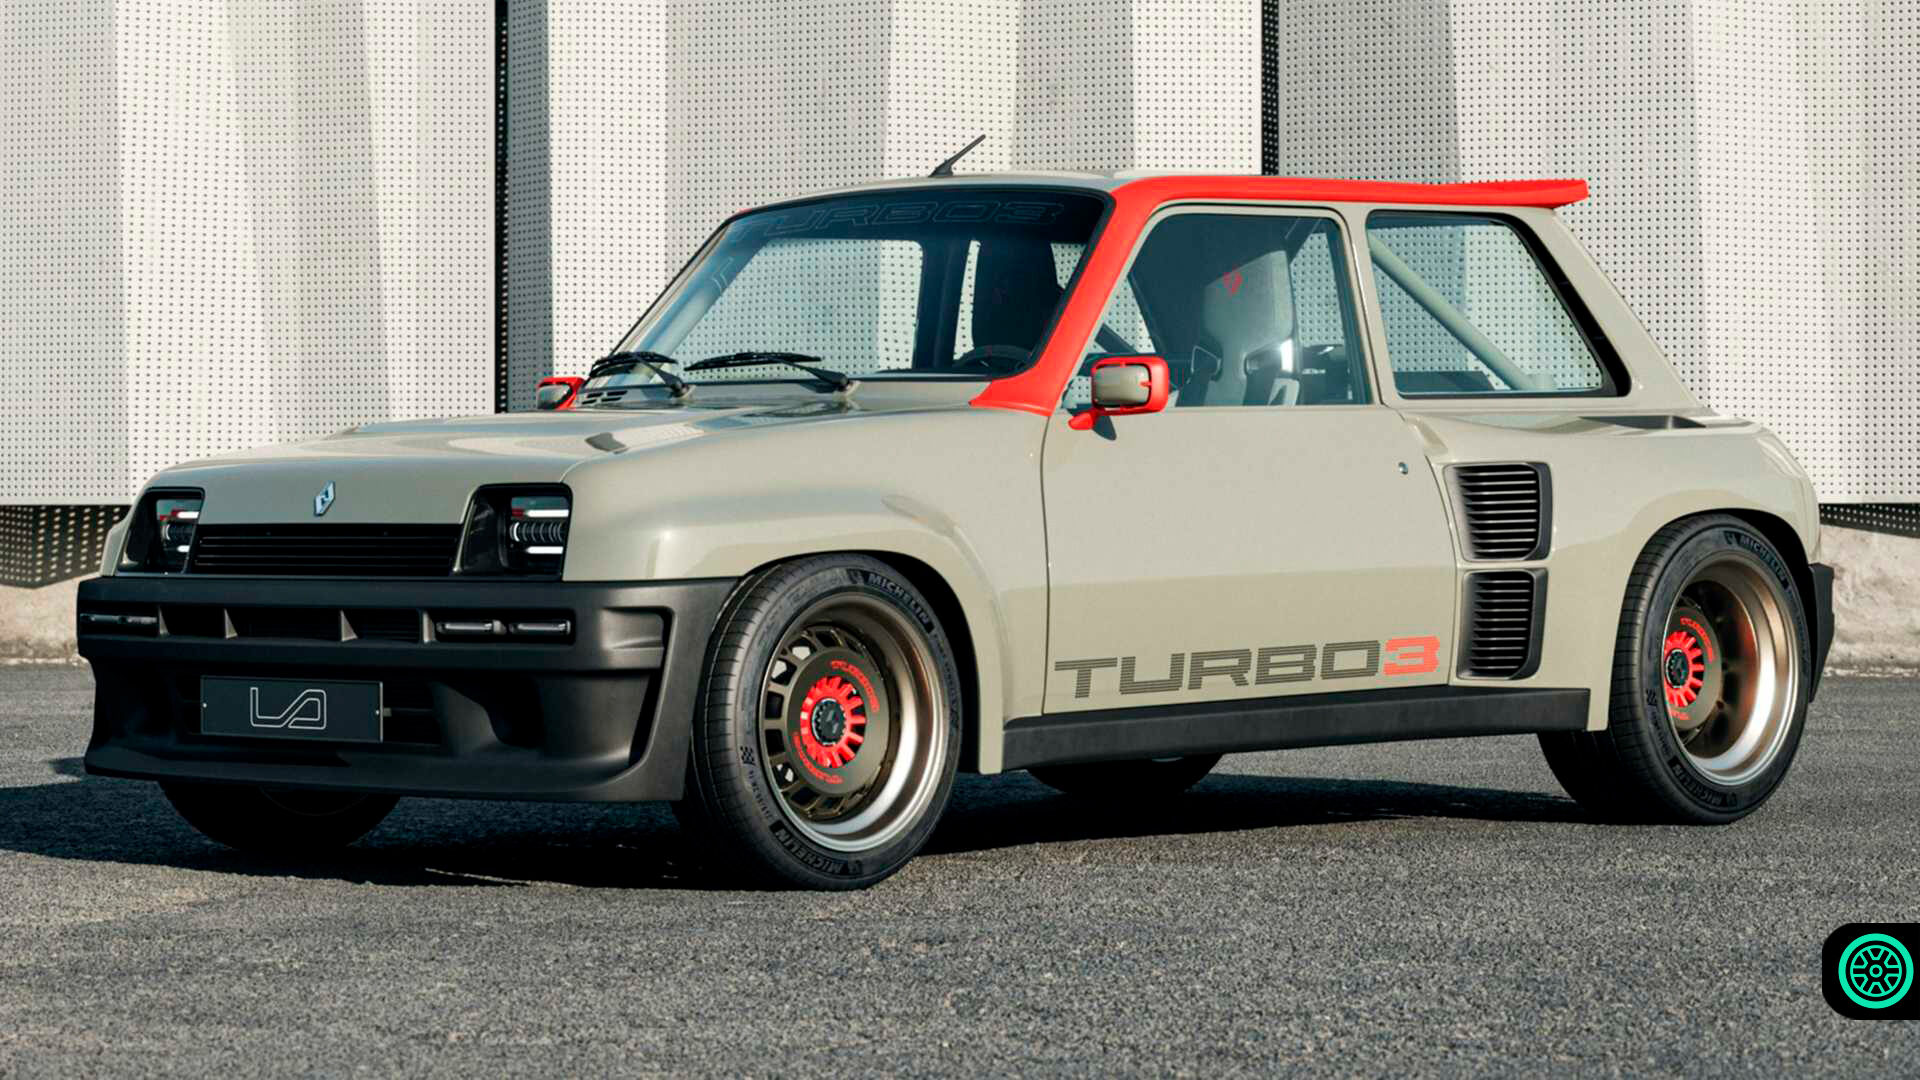 Renault 5 Turbo 3 karbon fiberli gövdesiyle görücüye çıktı 1